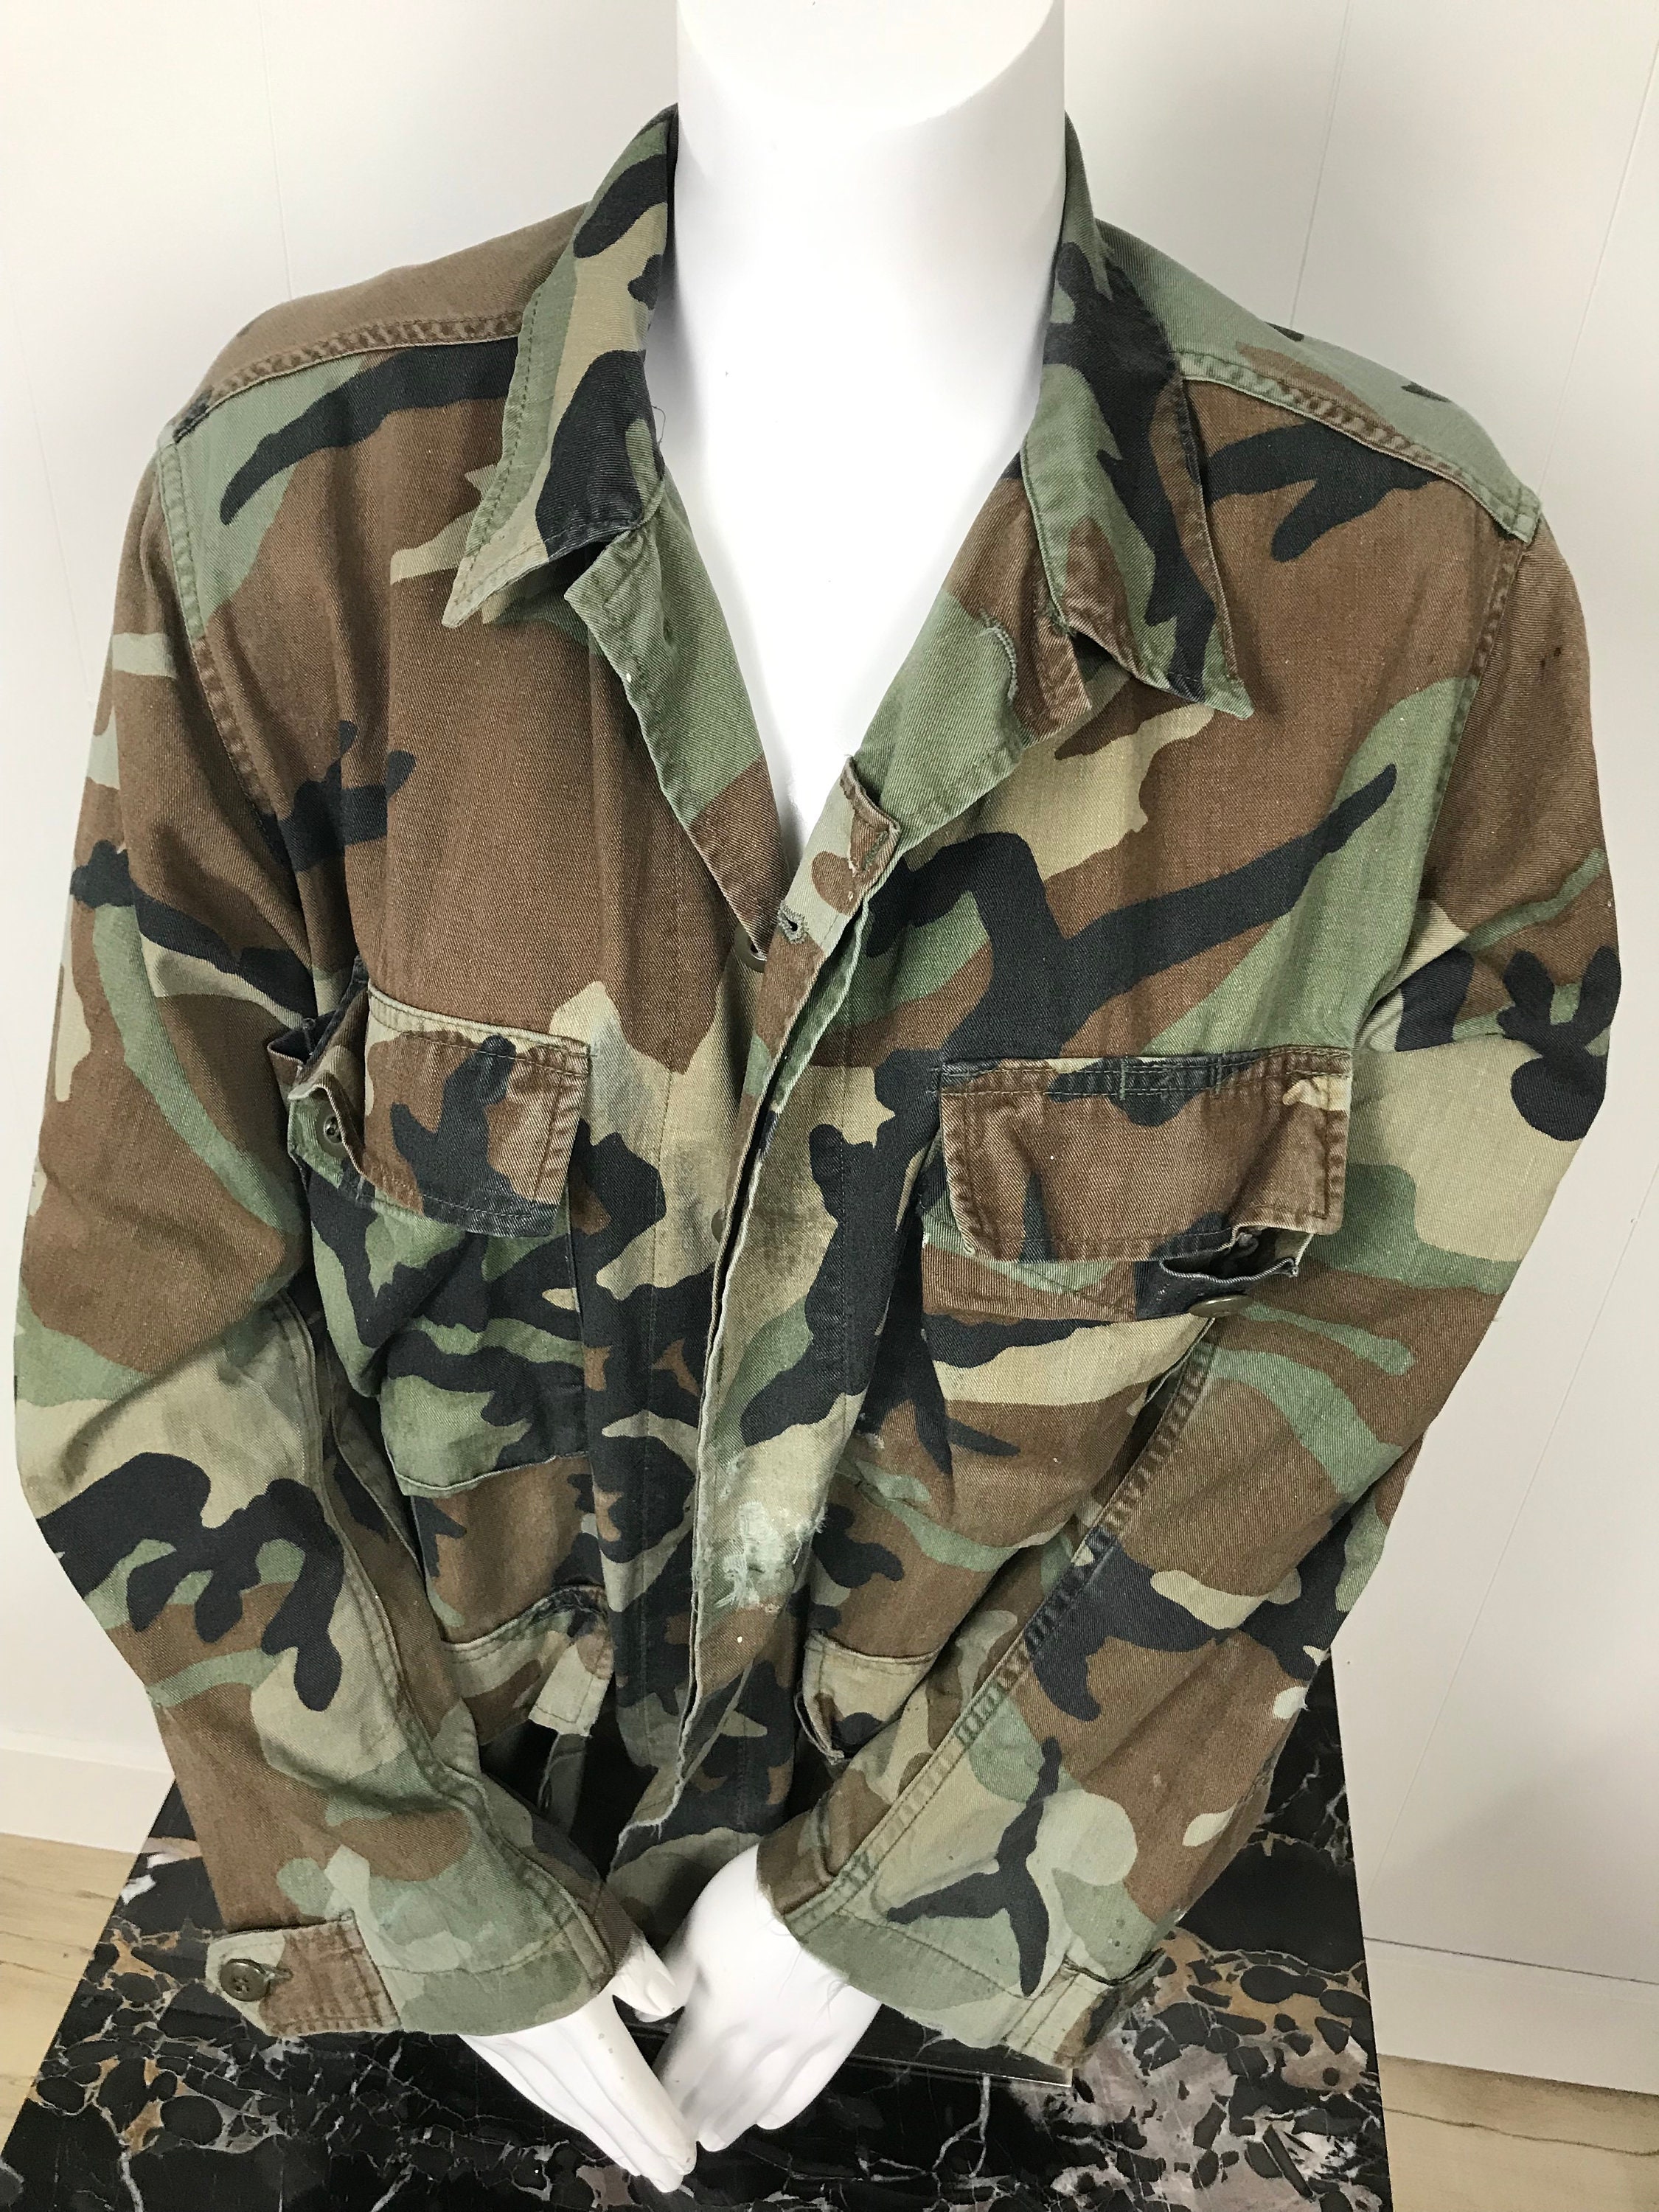 Armed Forces Gear Marines - Sudadera básica con capucha para hombre